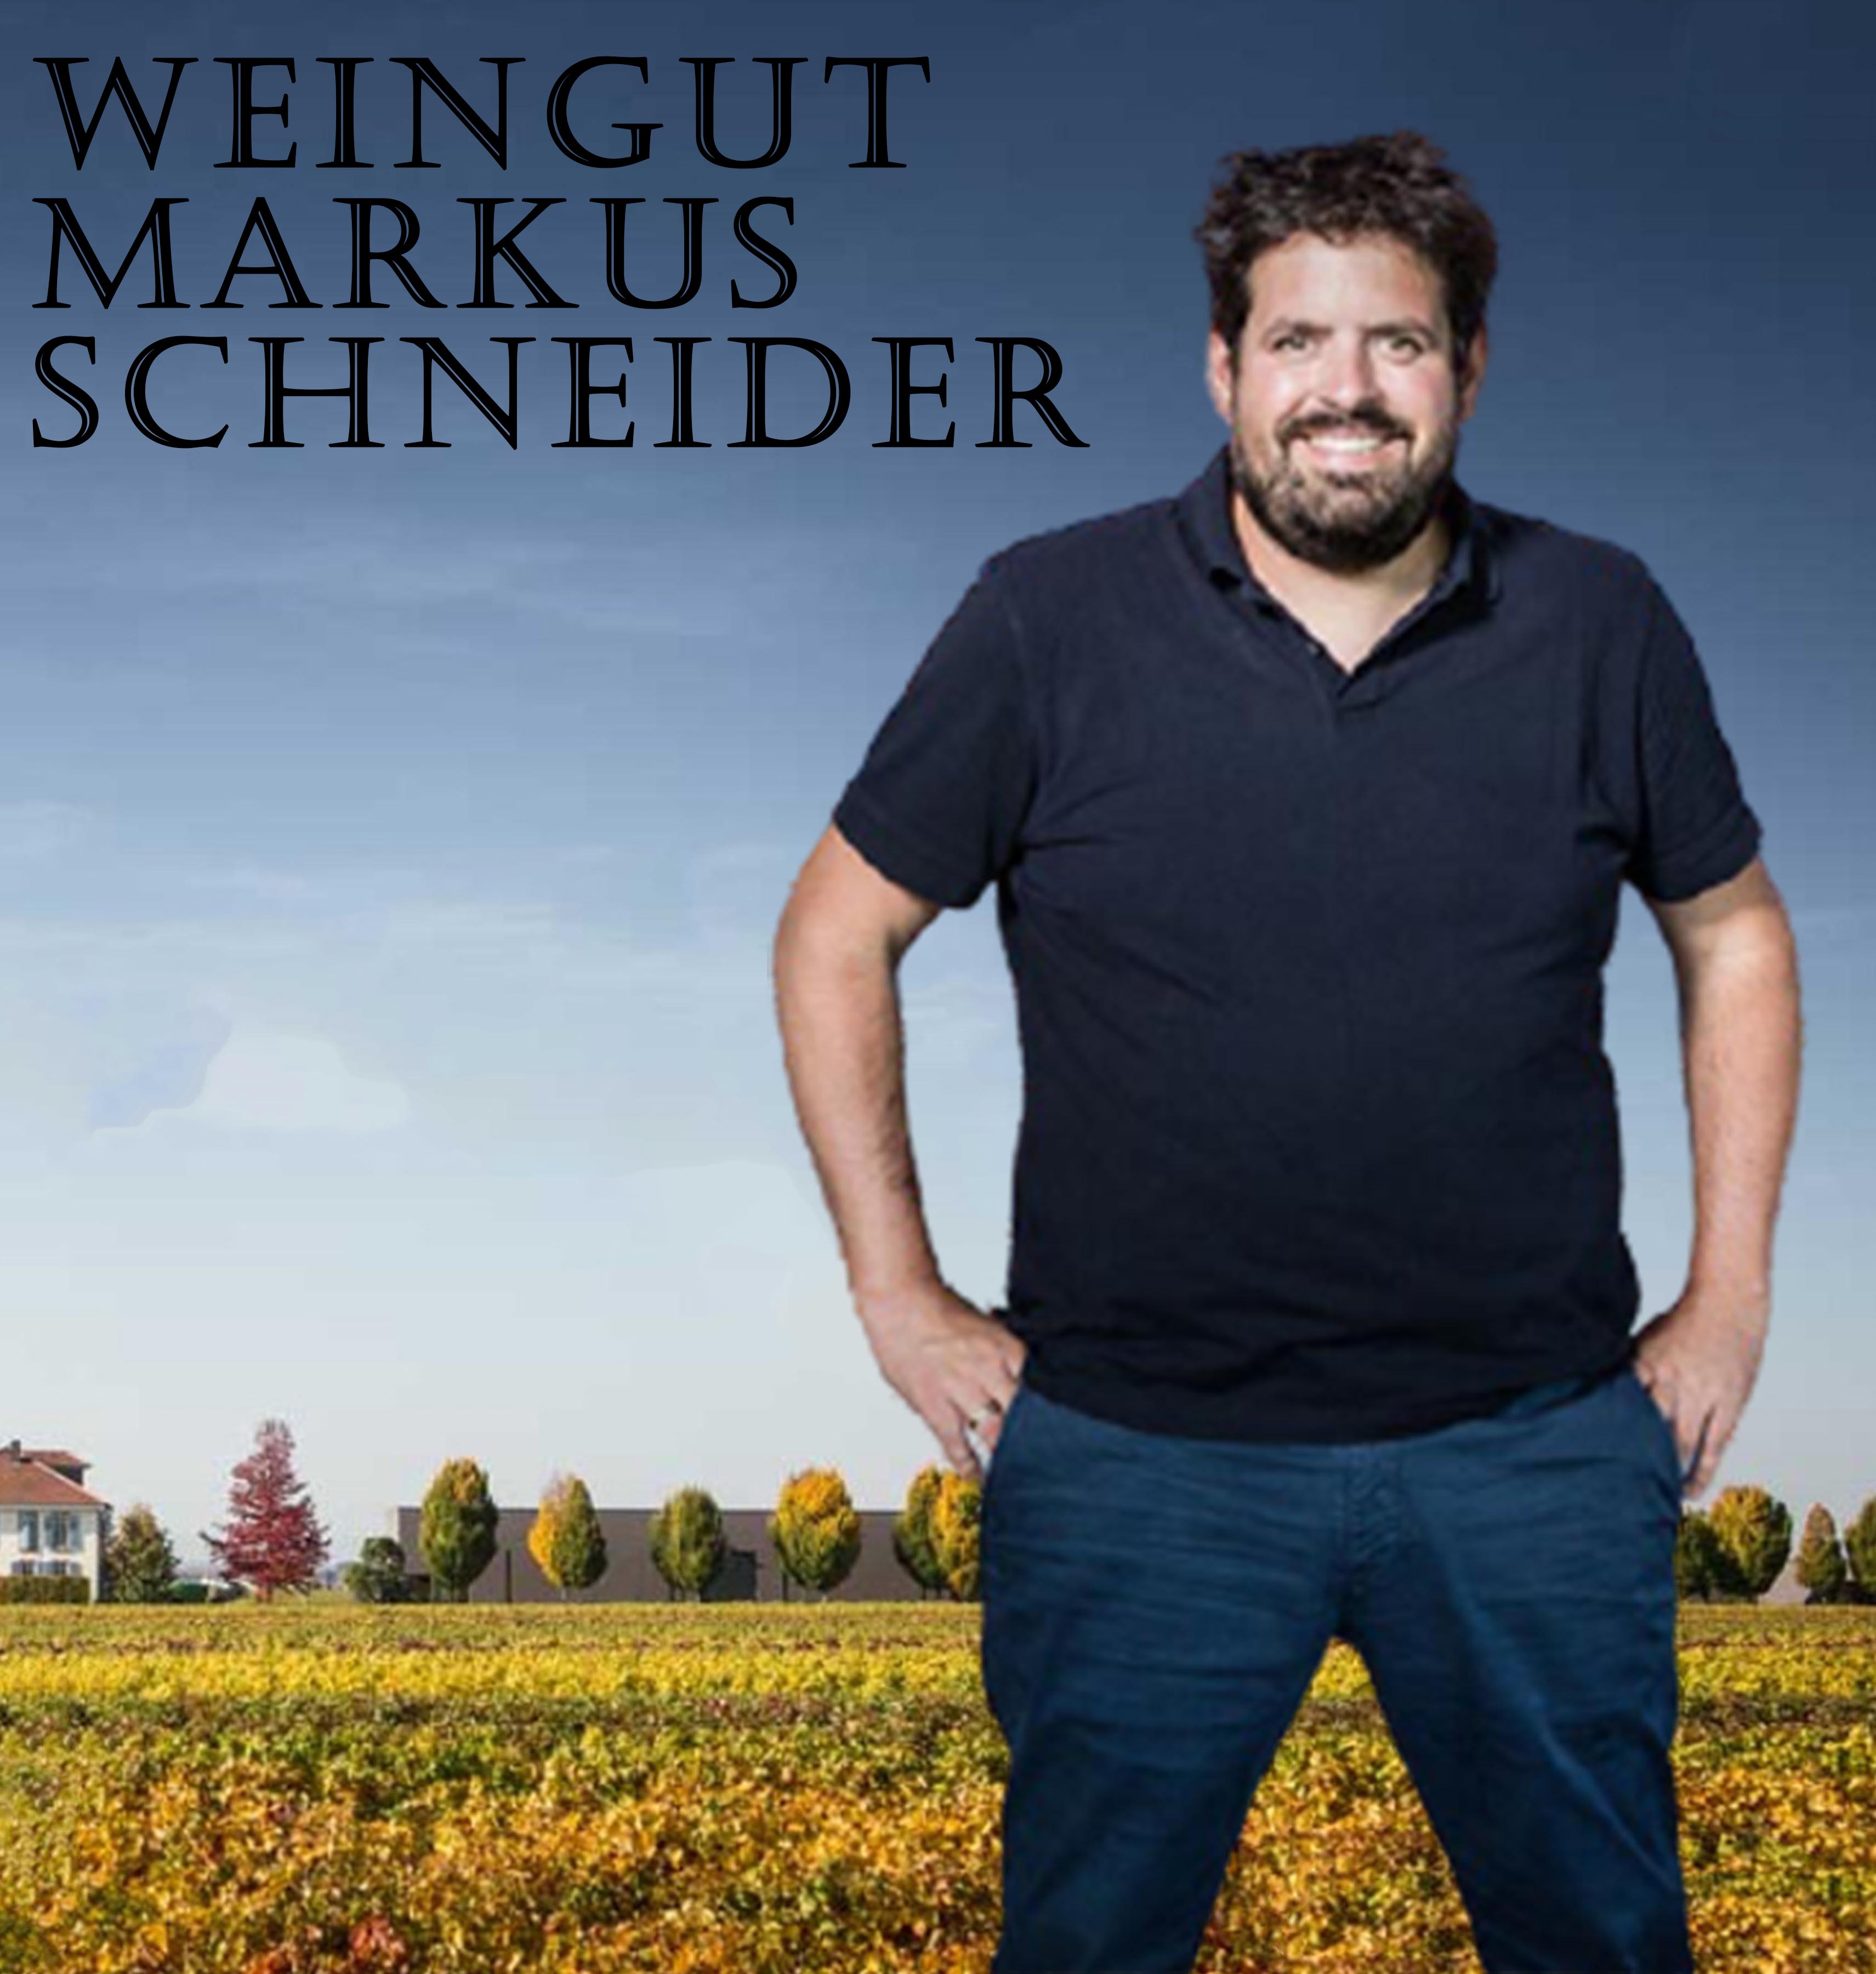 Weingut Markus Schneider